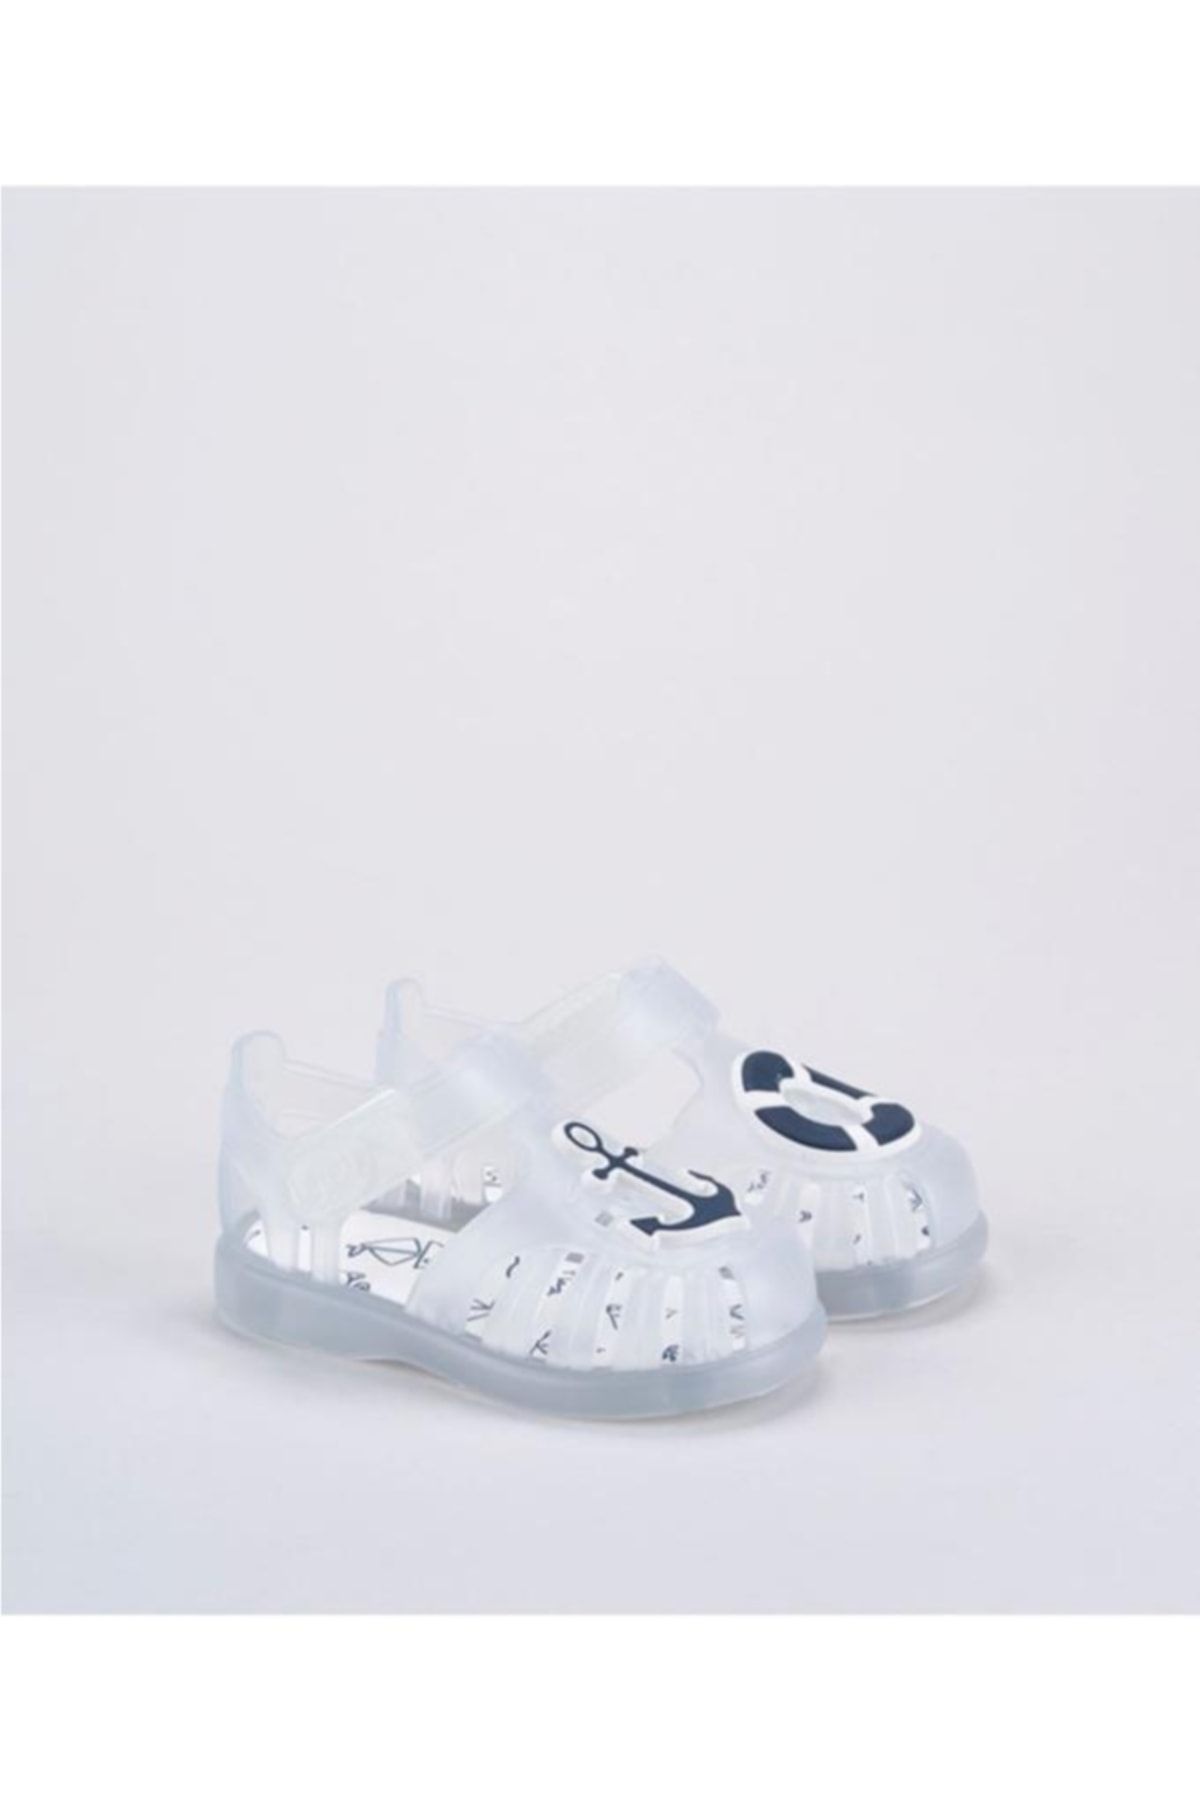 IGOR Çocuk Sandalet Beyaz Tobby Blanco Sandalet S10249-110